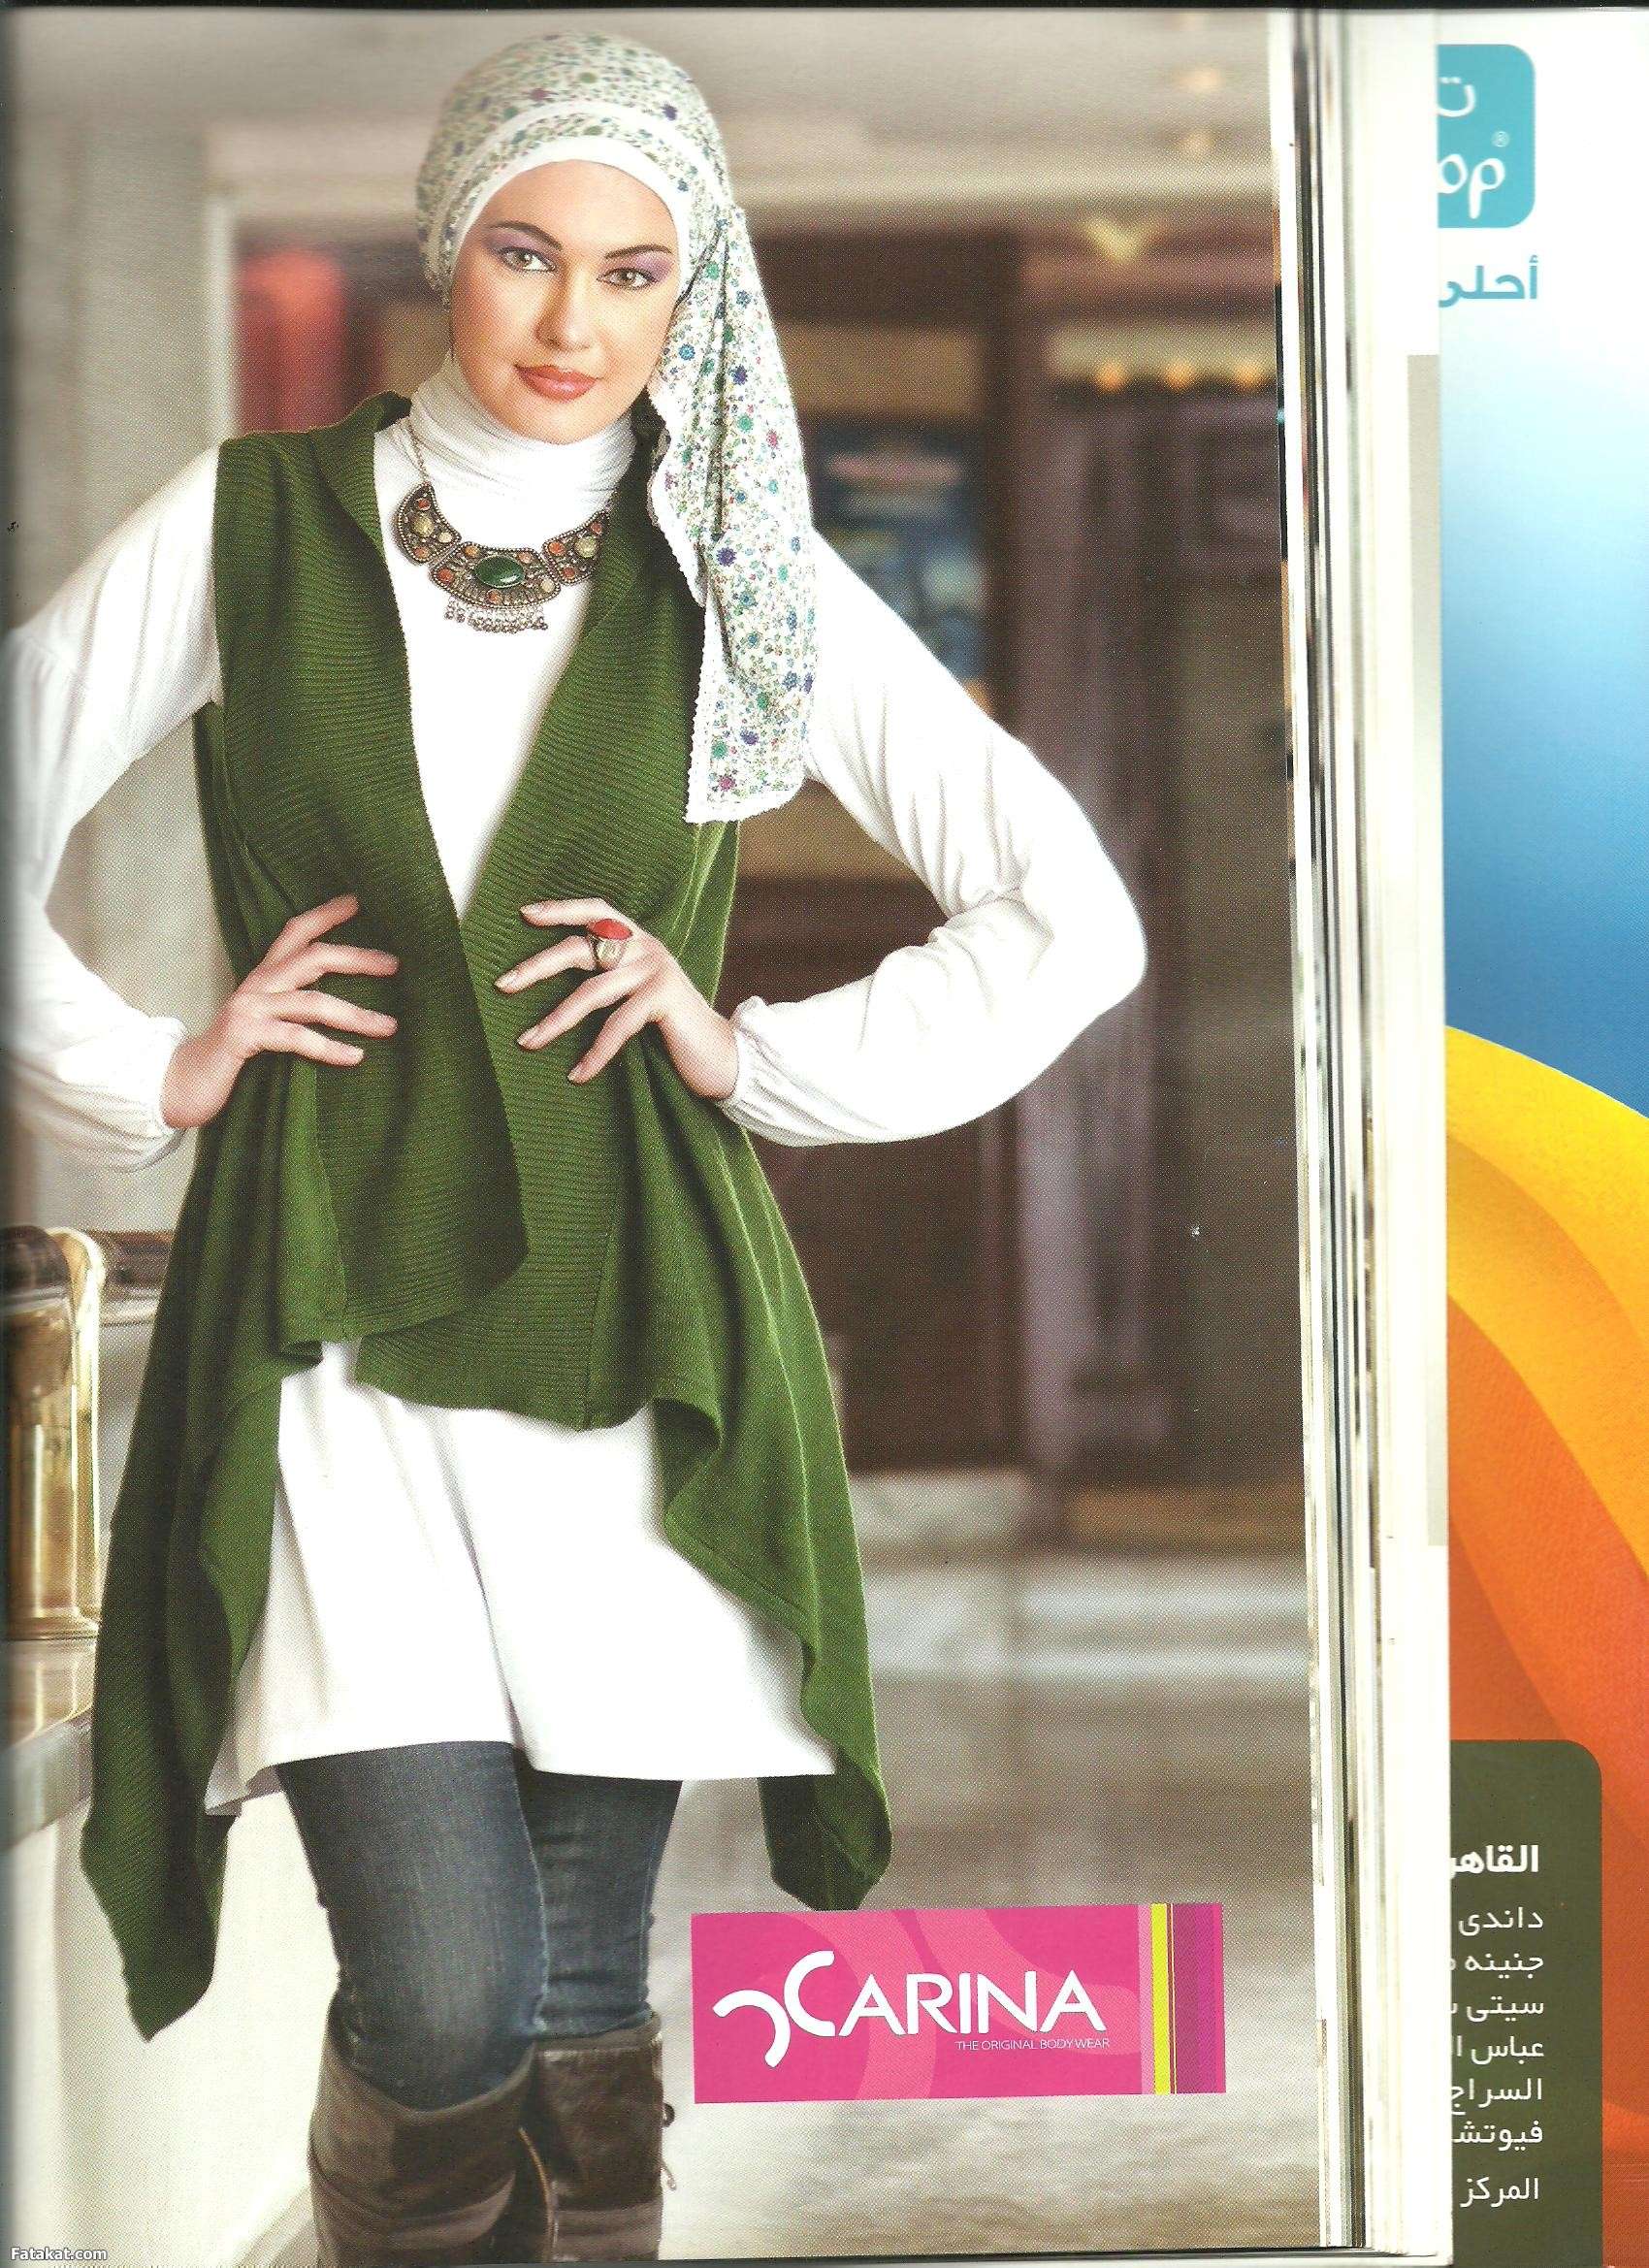 حصرررررى مجله حجاب فاشون فبراير 2012 على منتدى الستات وبس 13309657675356